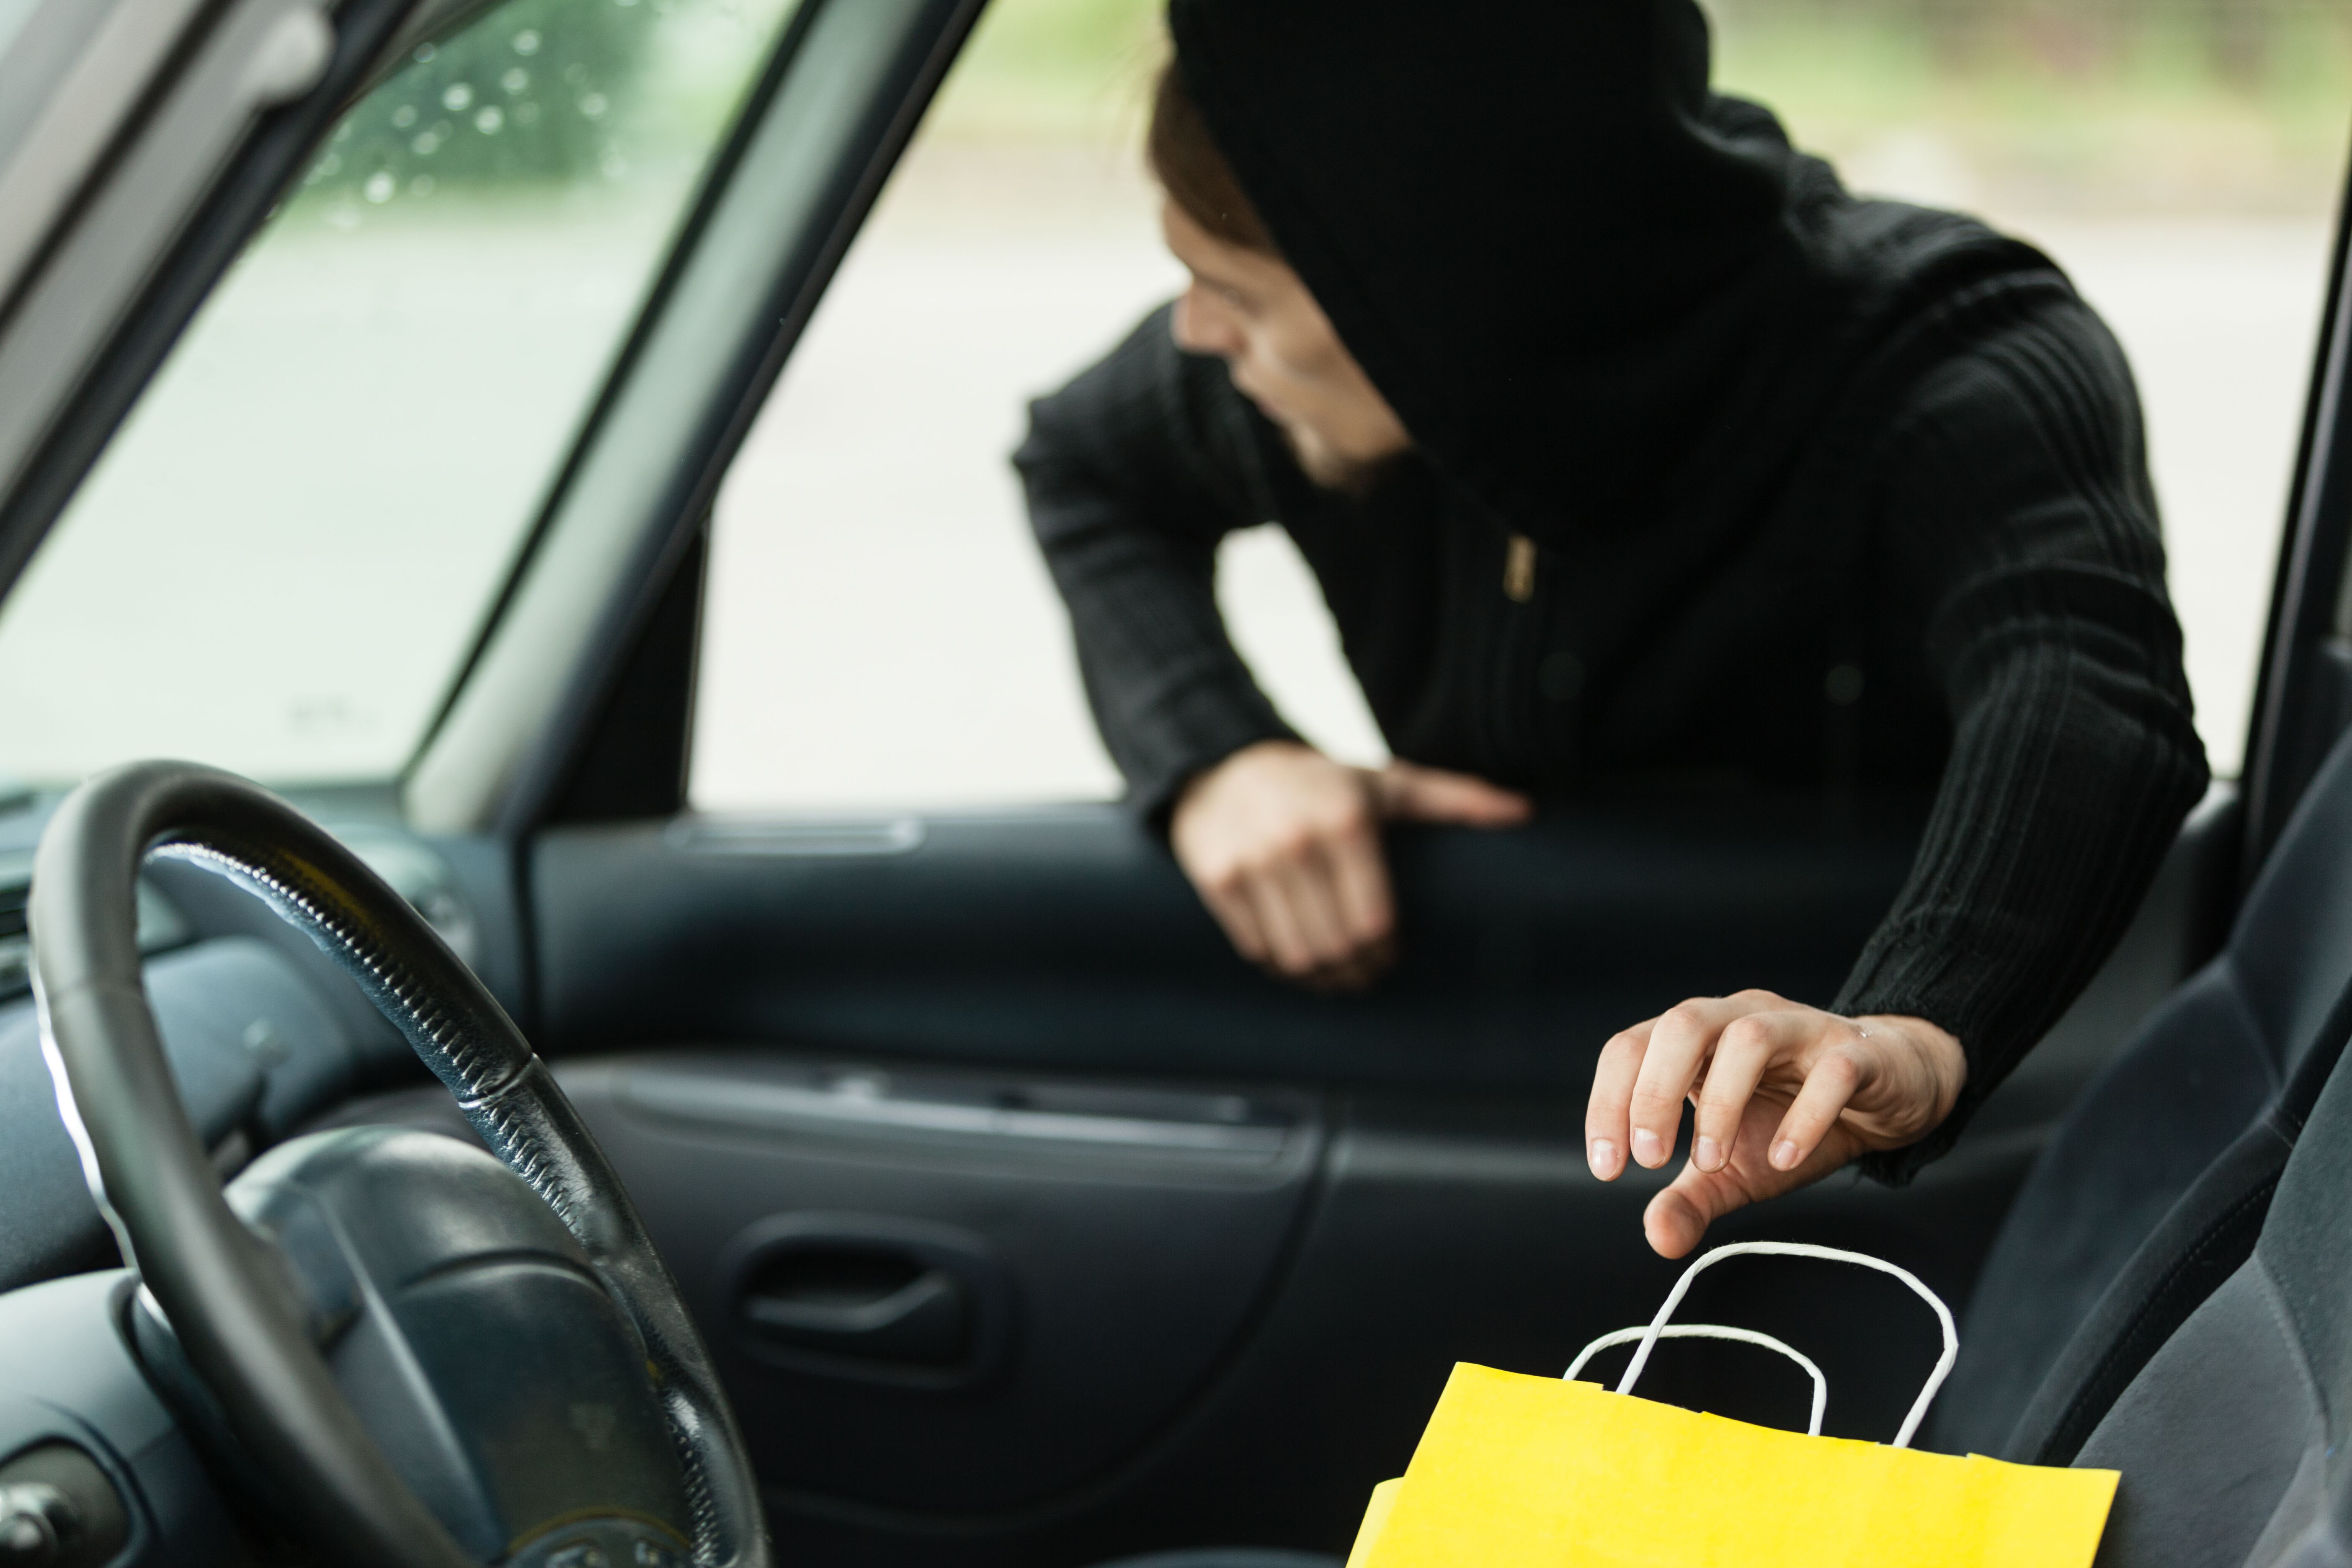 Man stealing a shopping bag - theft under 50 